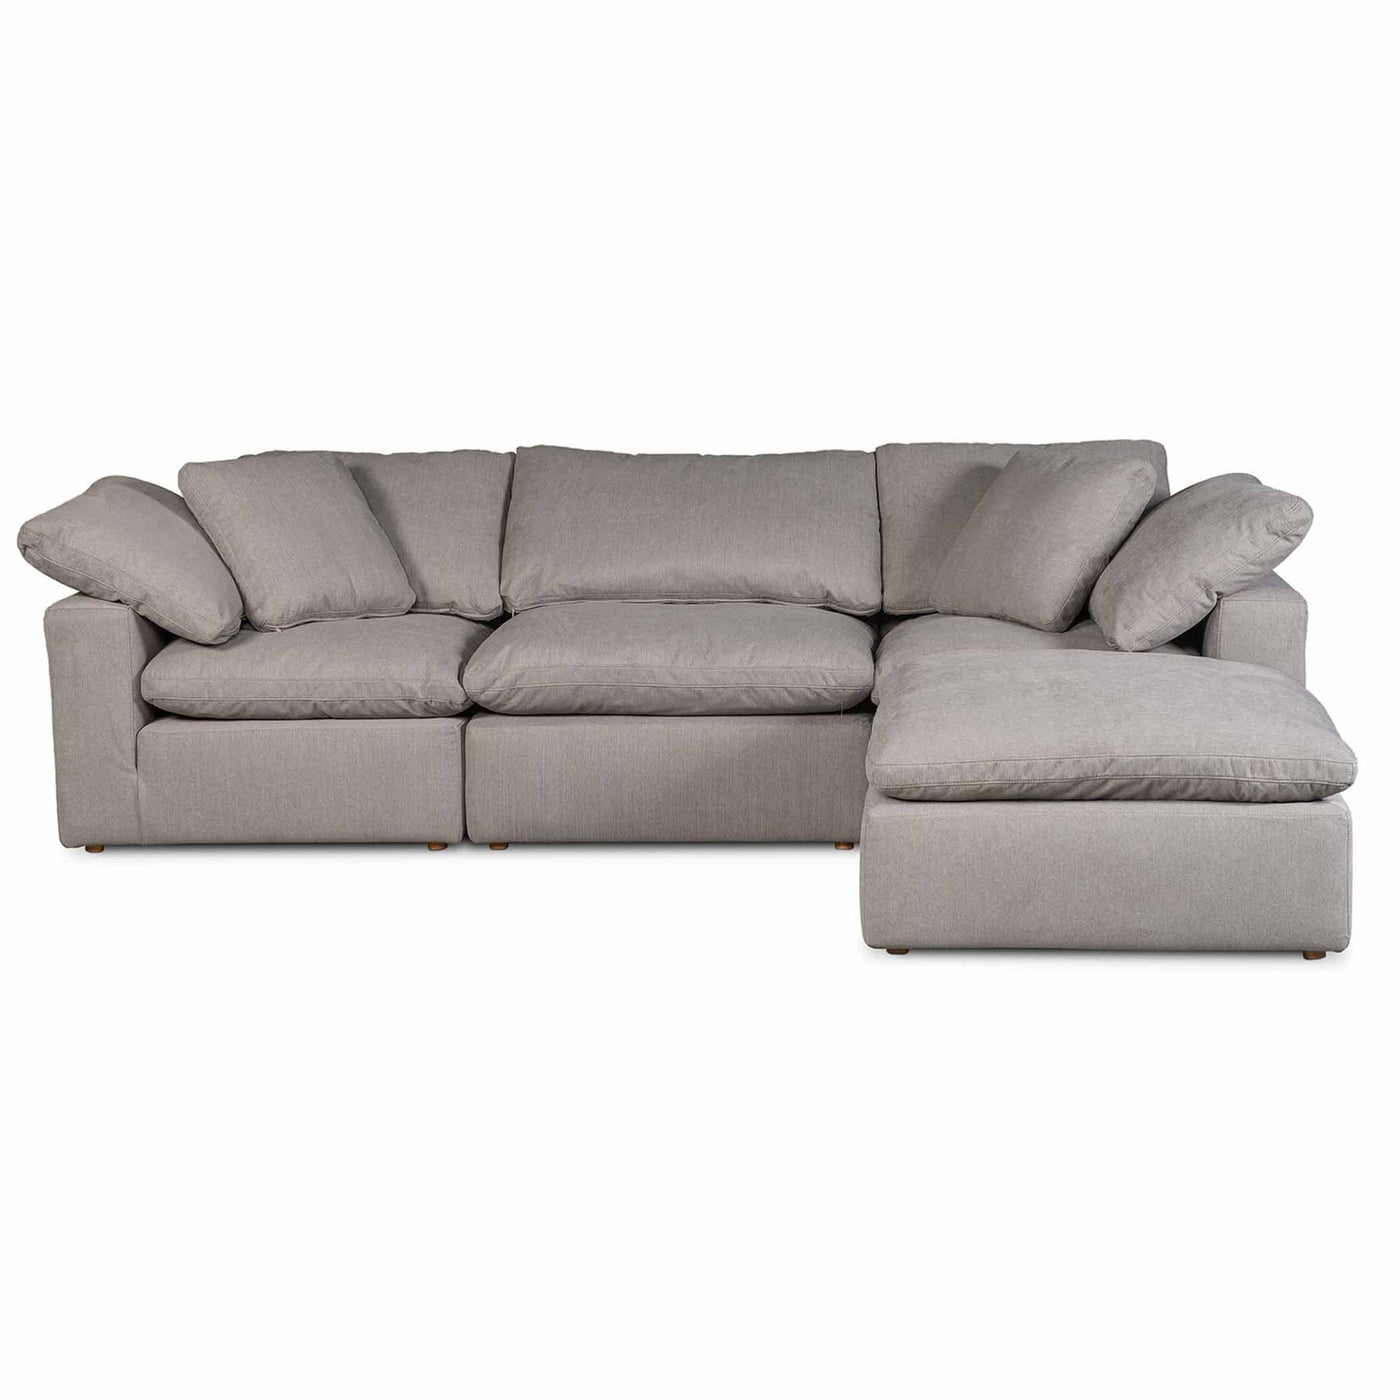 Moe's Home Collection, sofa sectionnel de 4 places avec un tissu résistant et des coussins bien rembourrés, en bois et tissu, gris clair